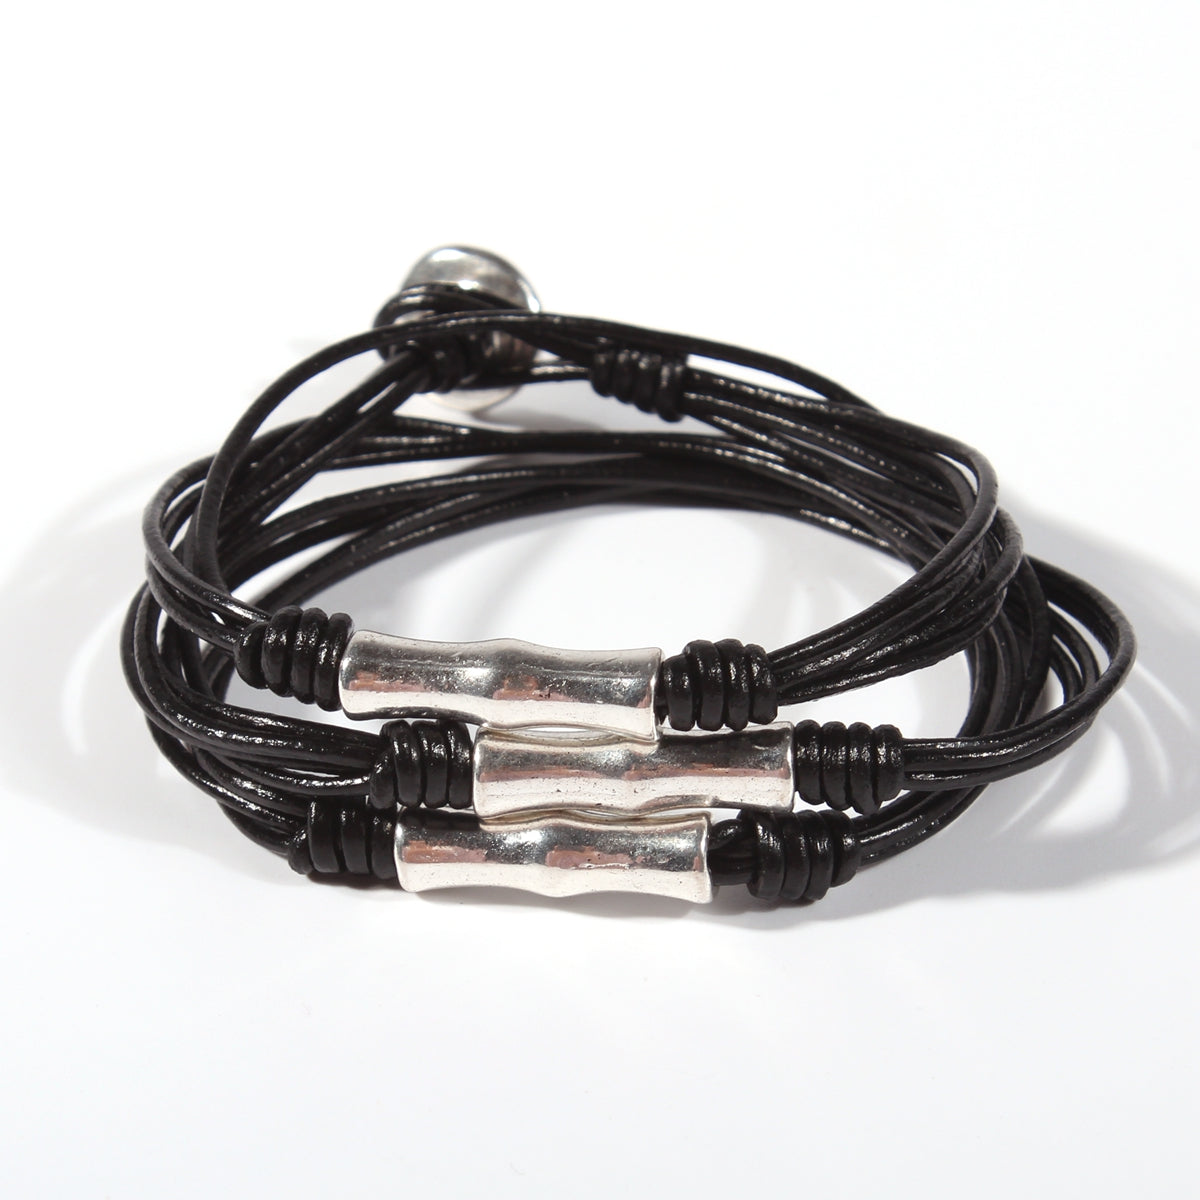 Genuine leather handmade women's bracelet MBR-07